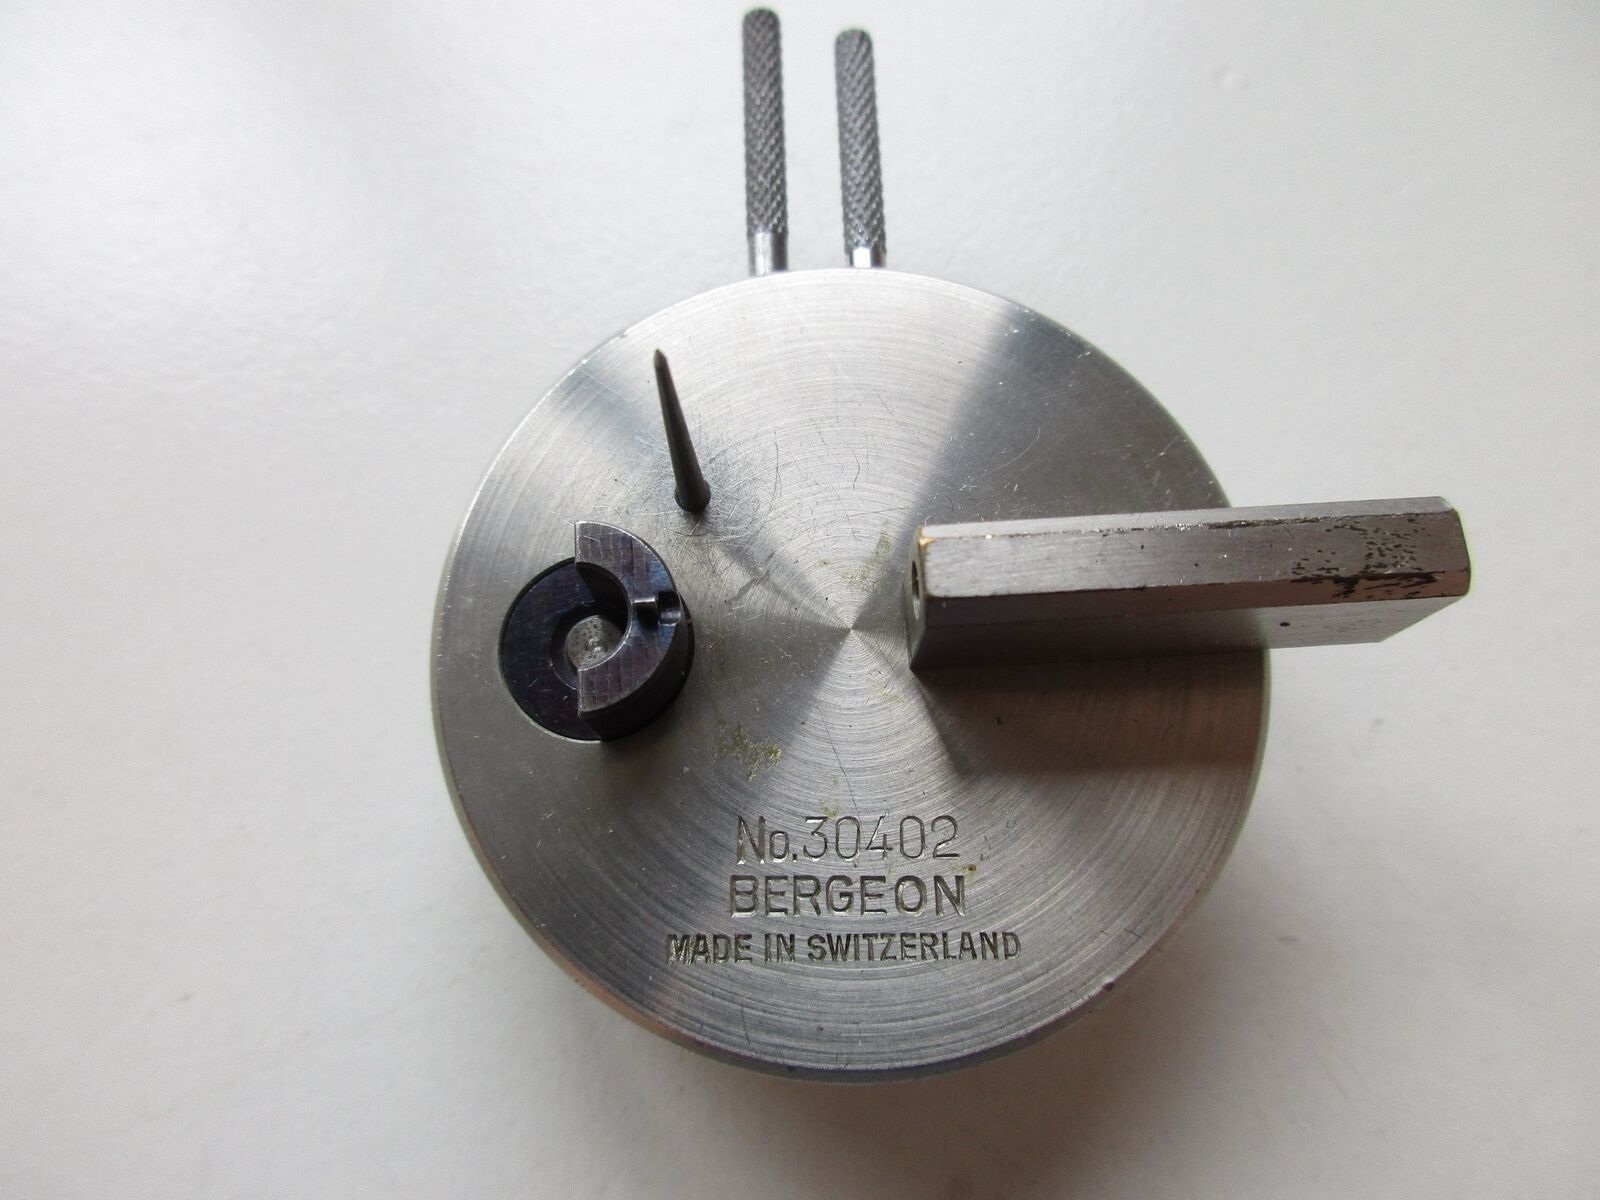 Bergeon balance screw cutting tool